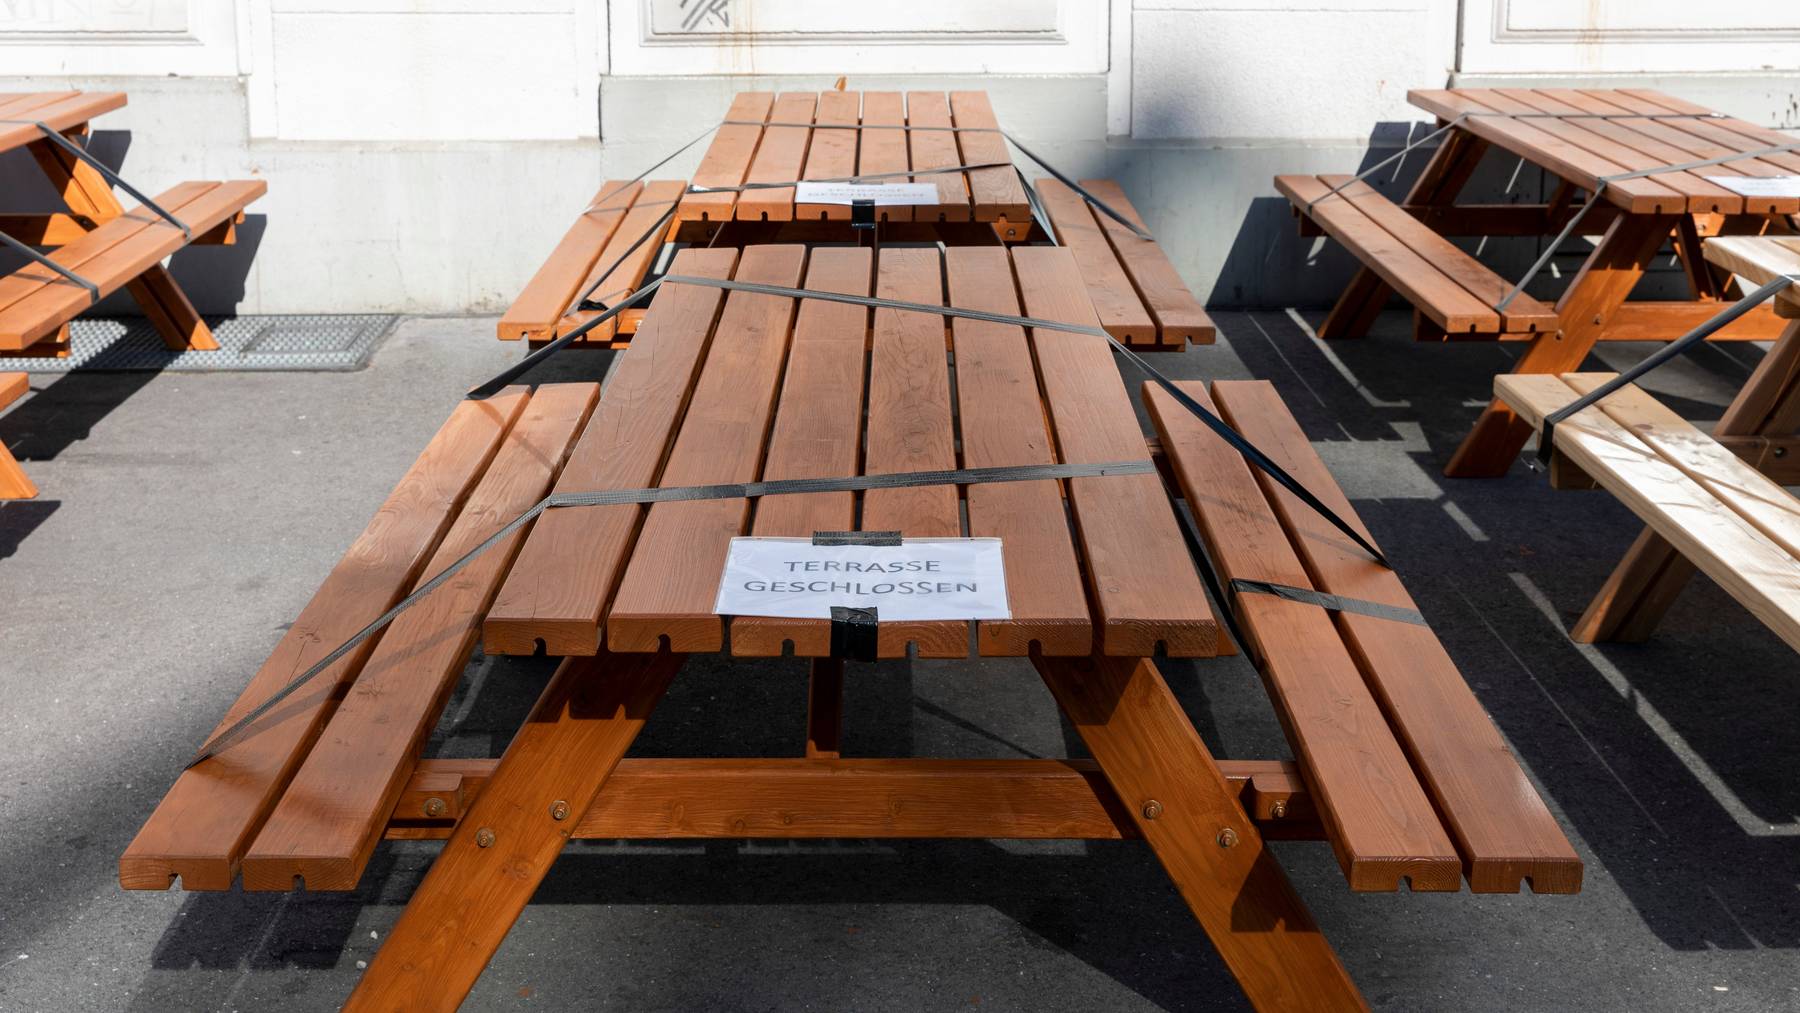 Wegen des Lockdowns blieben viele Tische in Restaurants lange leer. (Symbolbild)